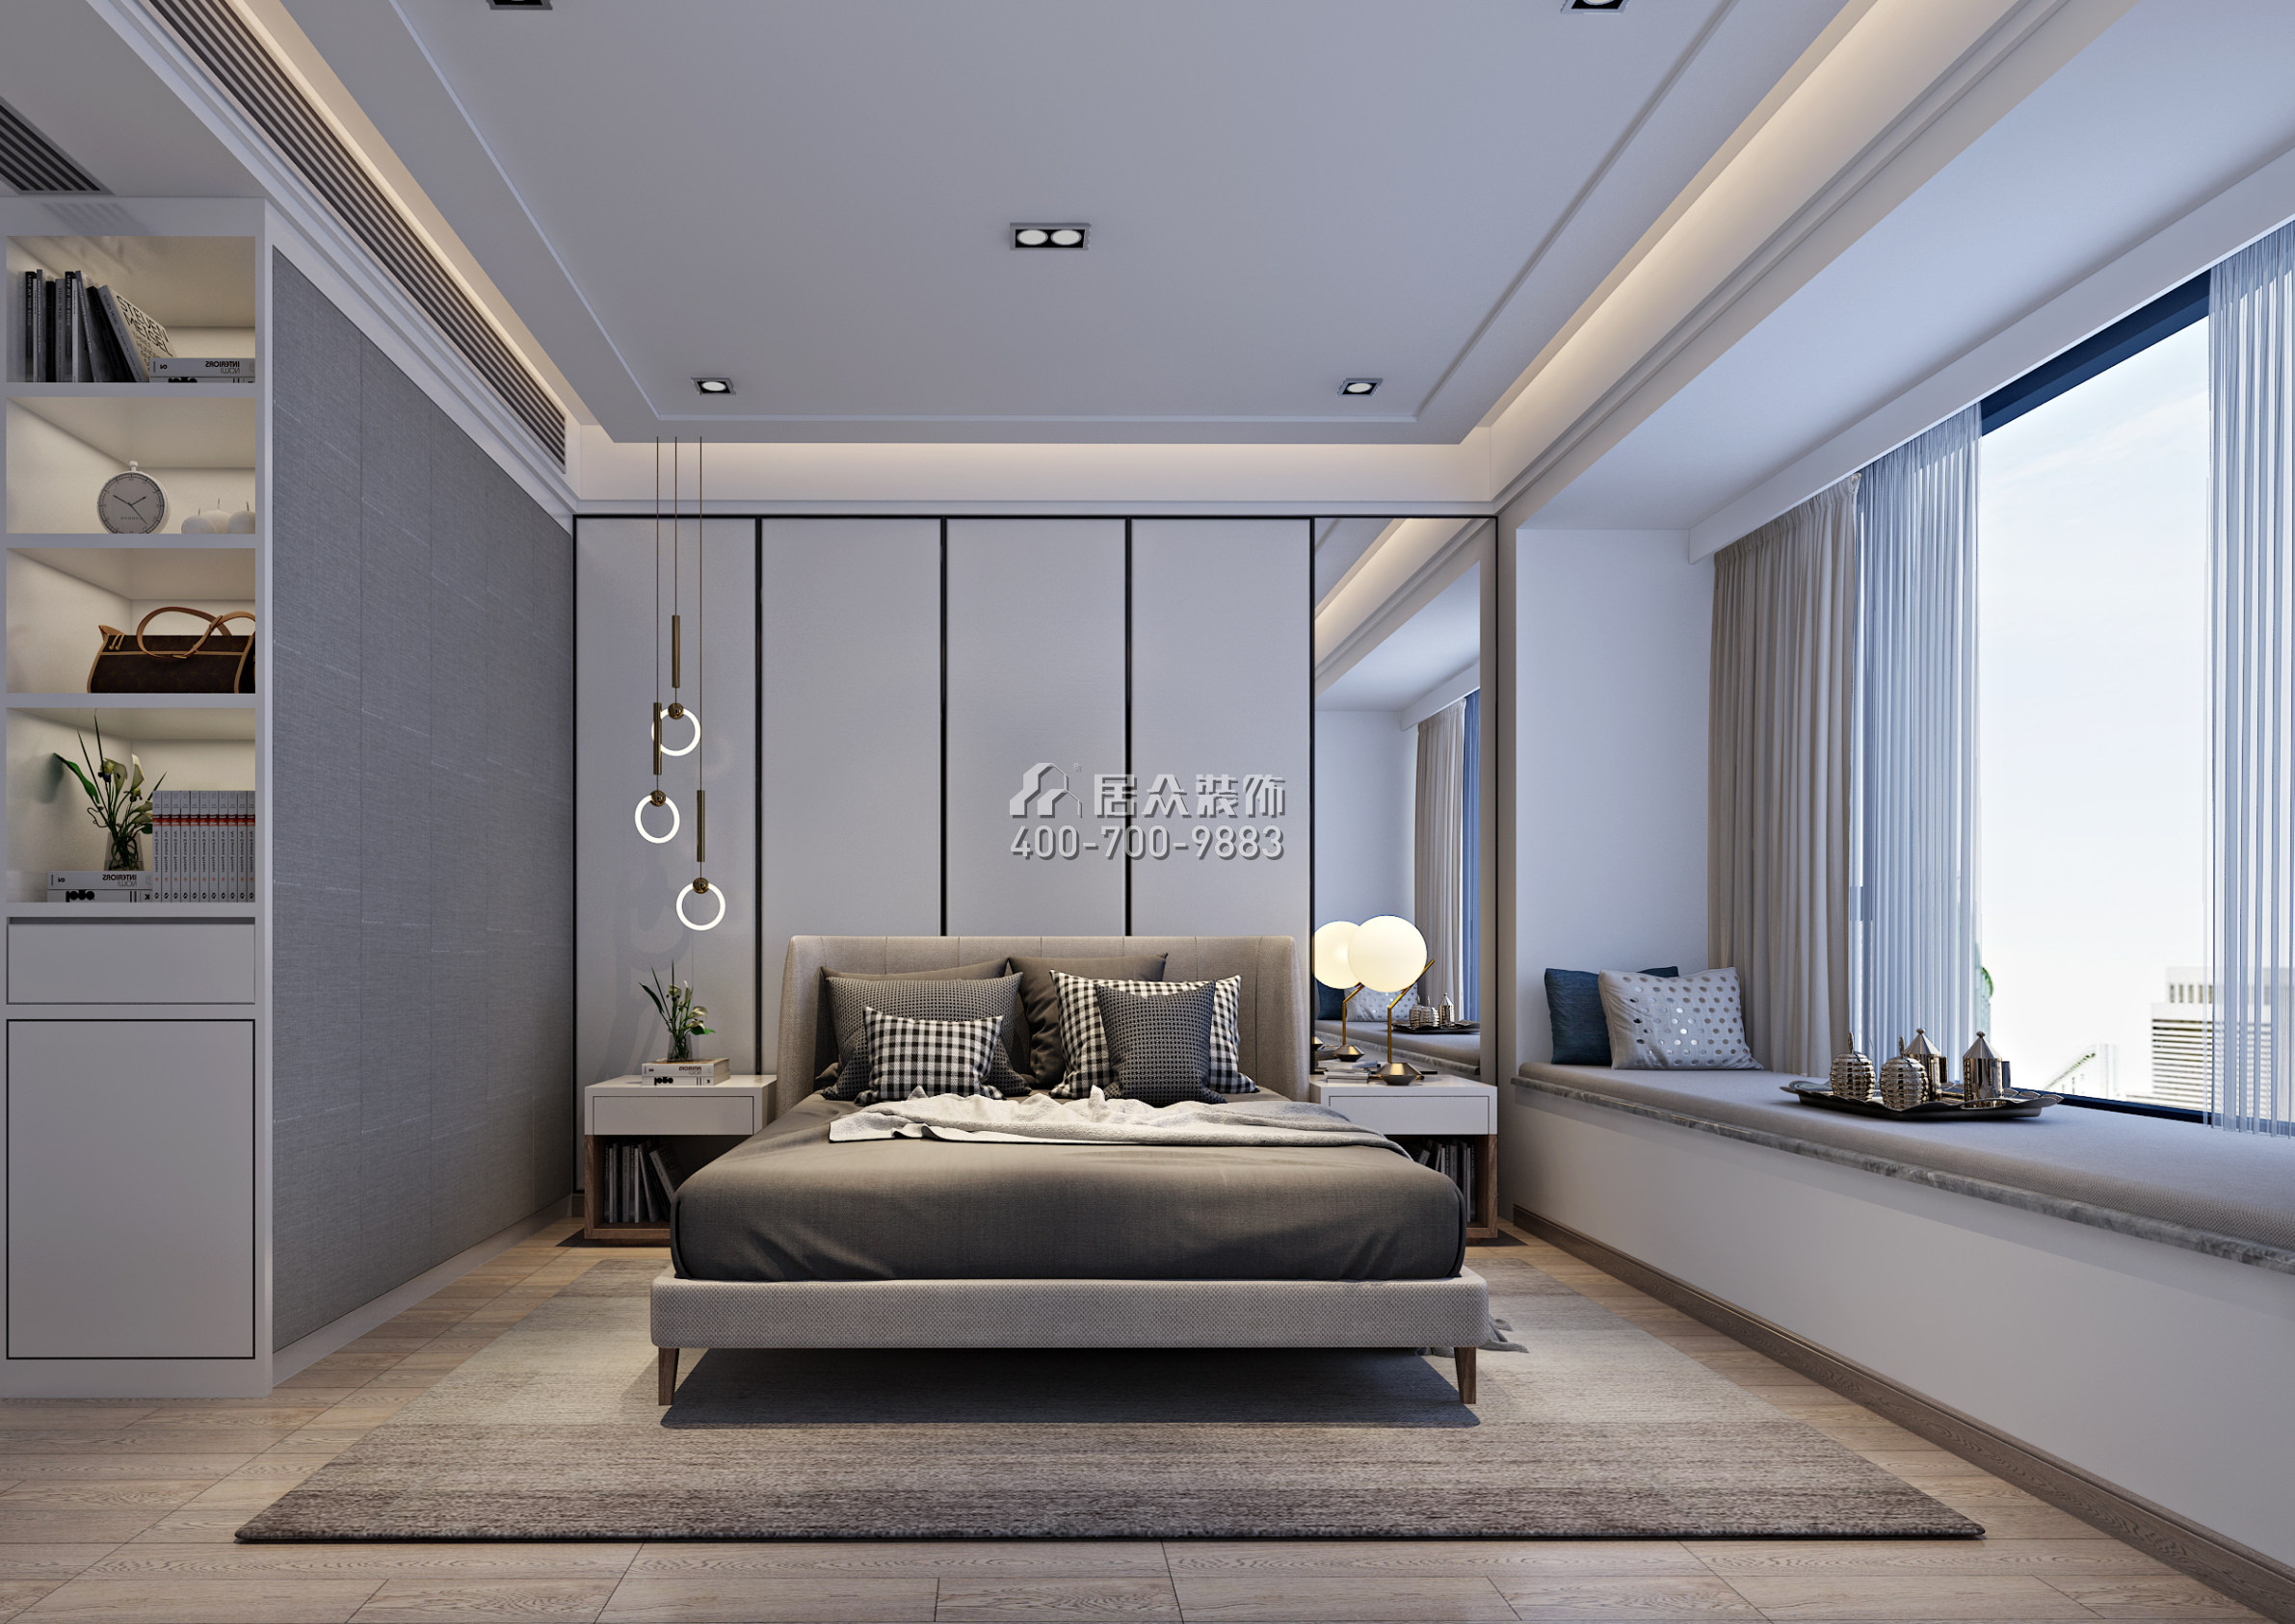 香山美墅四期169平方米现代简约风格平层户型卧室装修效果图